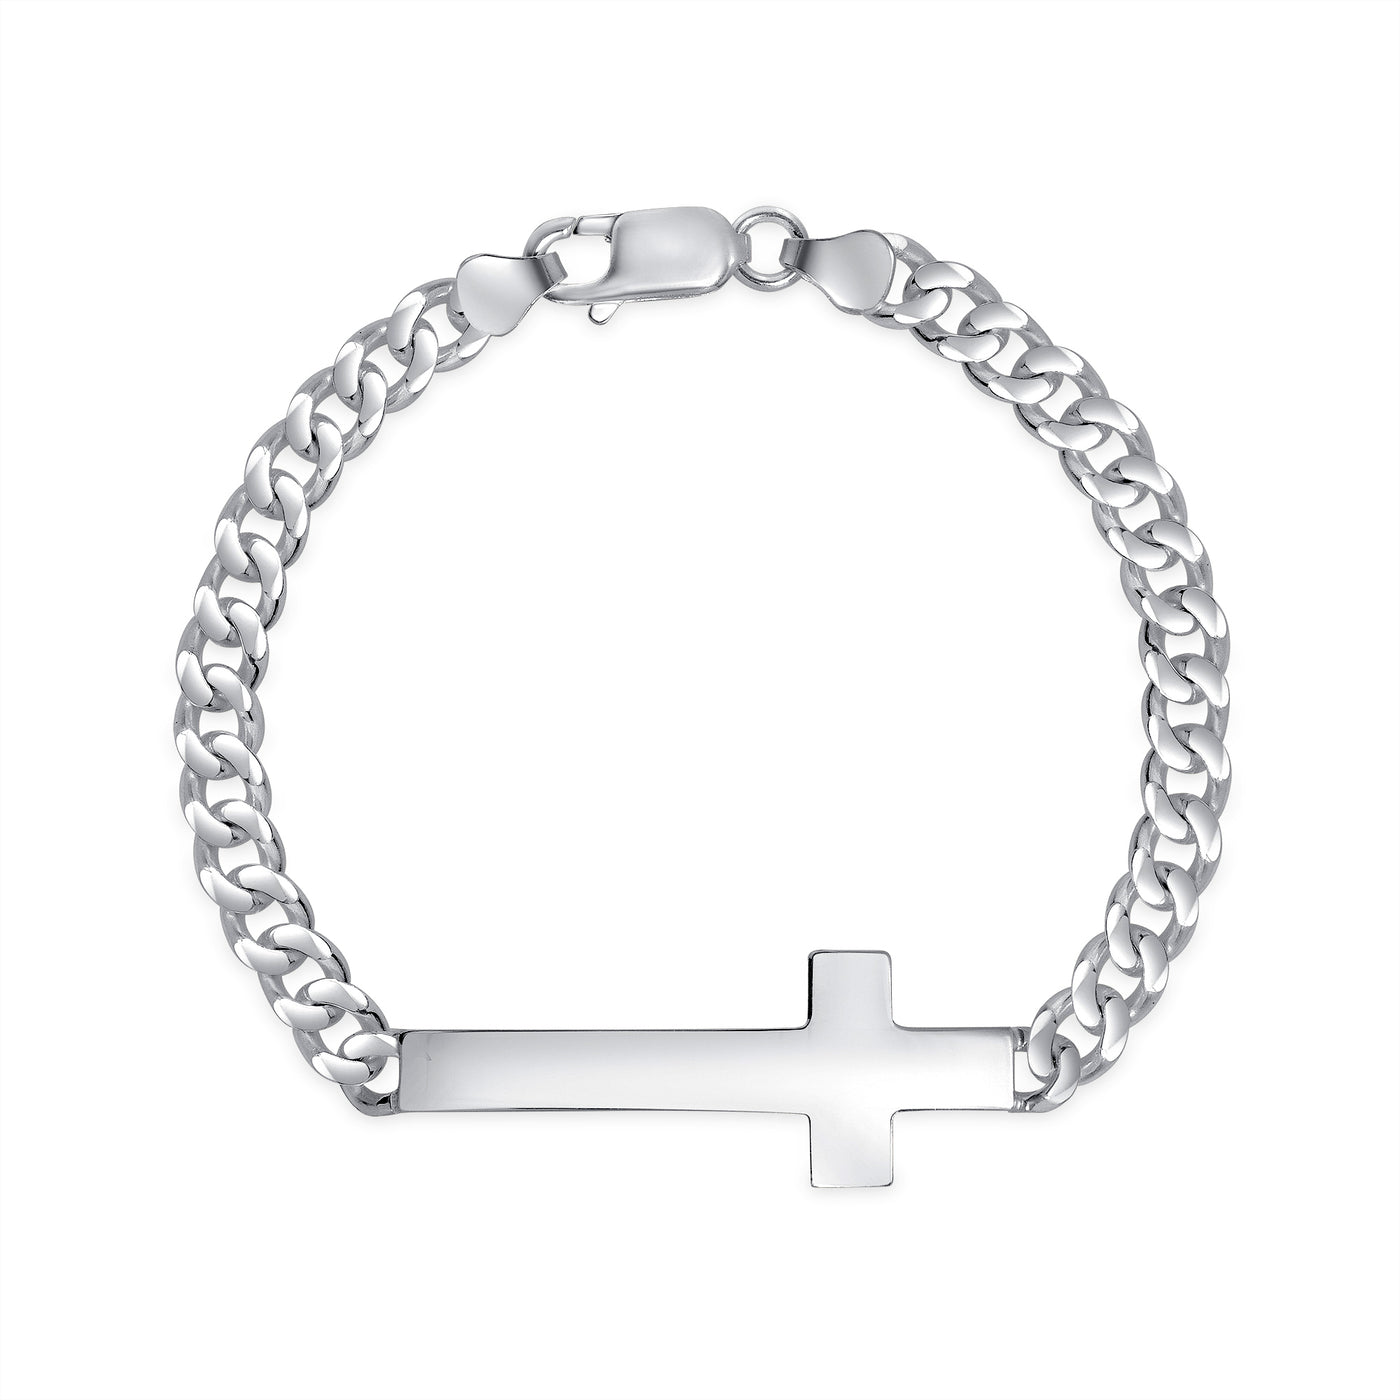 Italian Sterling Silver Polish Sideways Cross Bracelet for Men and Women, 7"or 8"